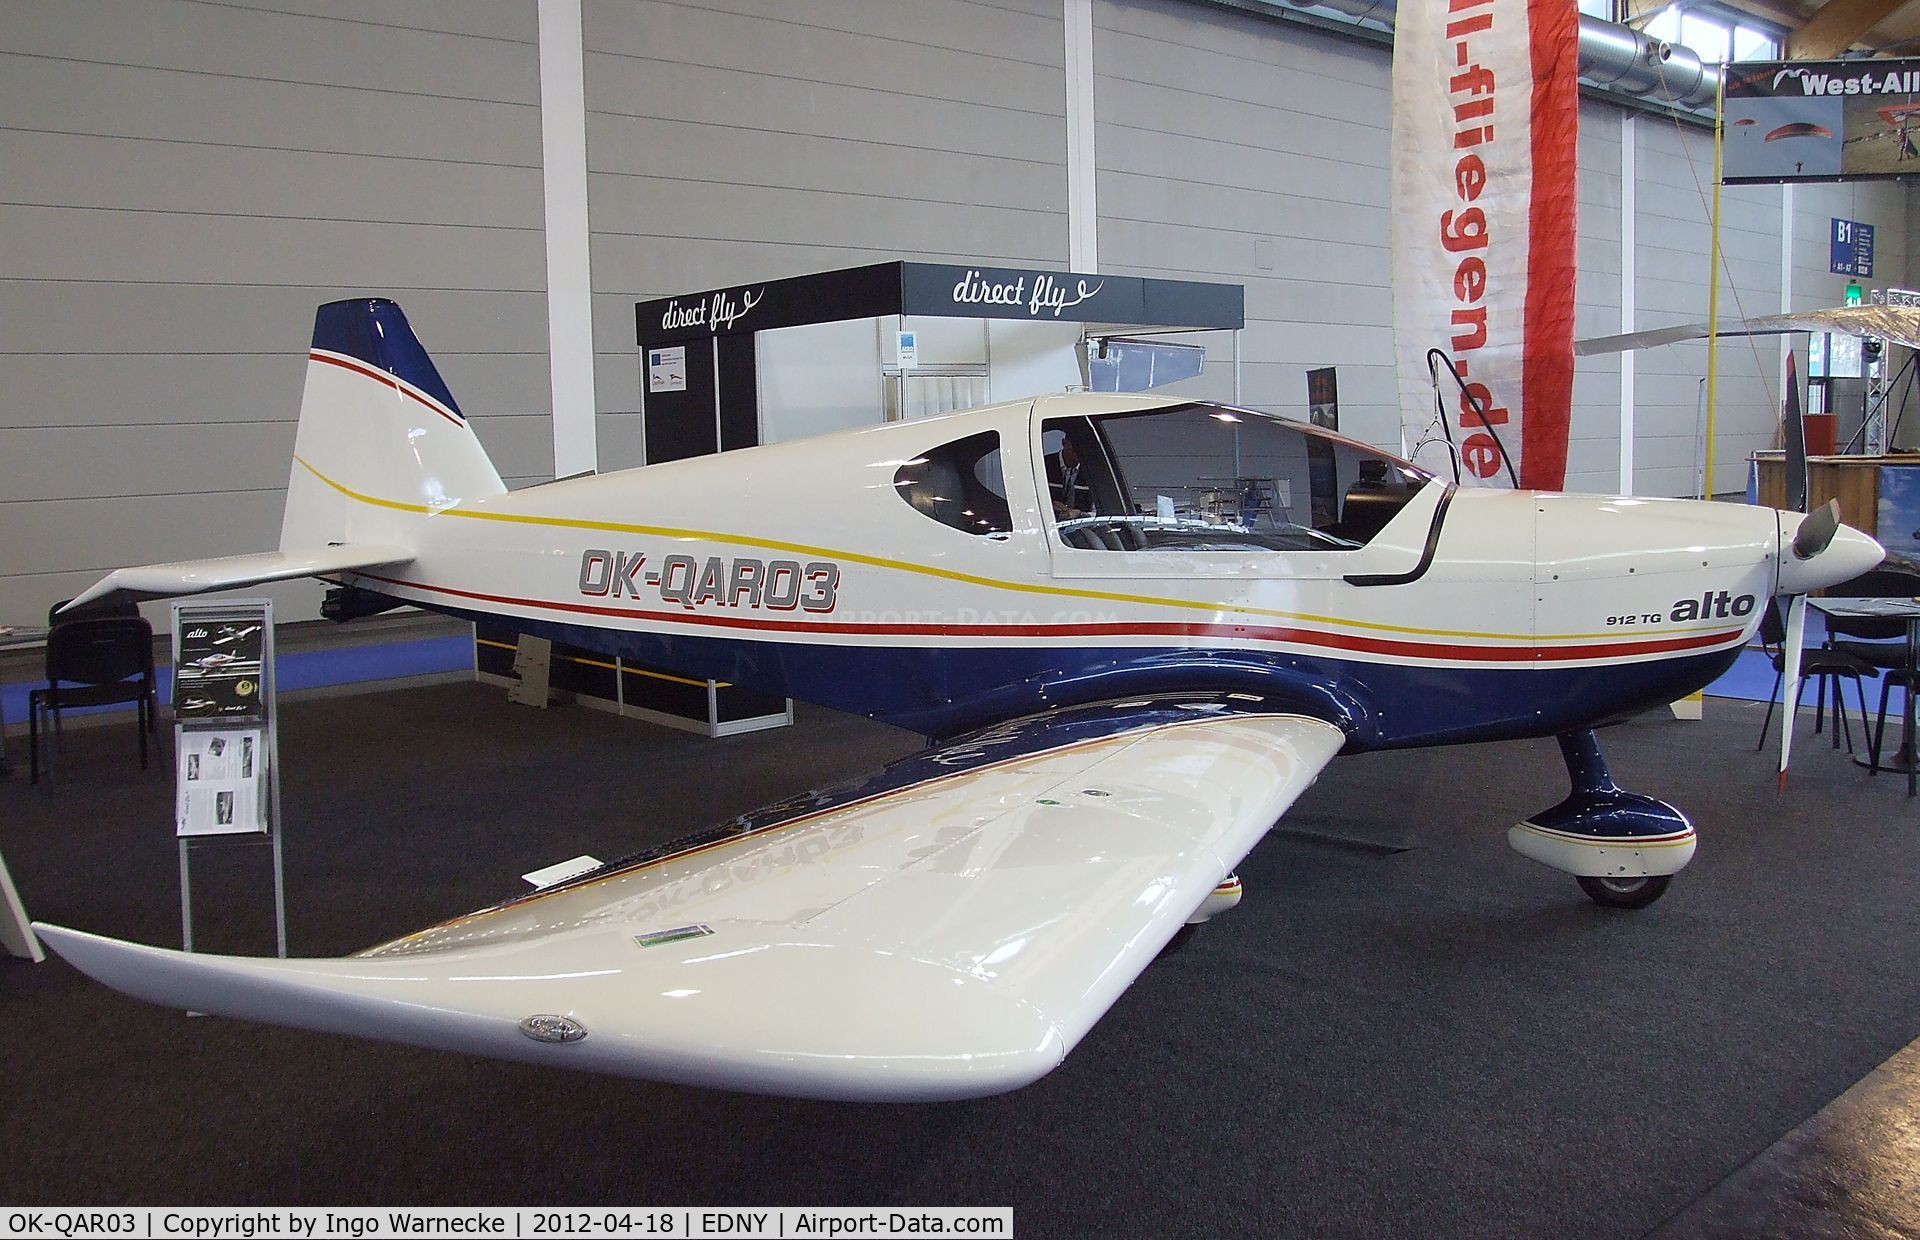 OK-QAR03, Direct Fly Alto C/N Not found OK-QAR03, Direct Fly Alto at the AERO 2012, Friedrichshafen